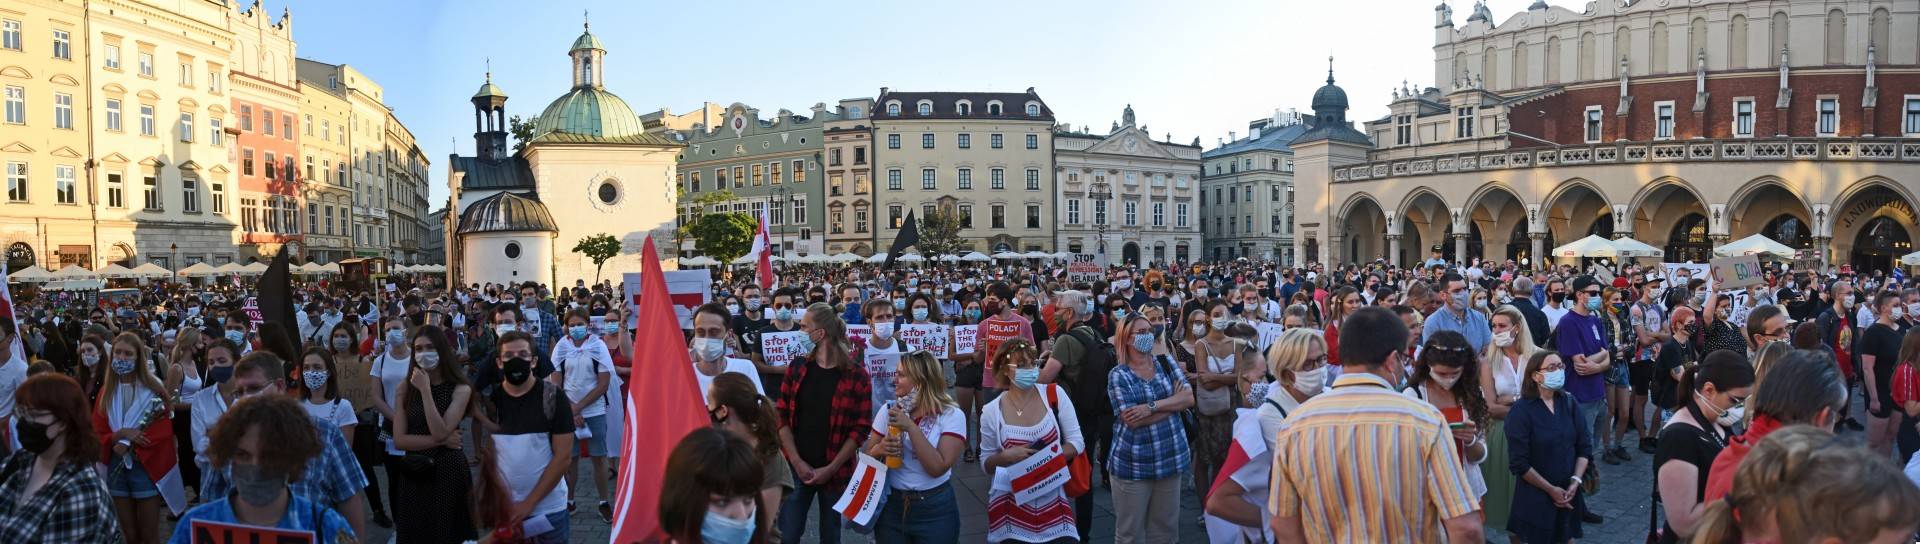 Kraków wspiera Białoruś! Kolejna manifestacja na Rynku Głównym